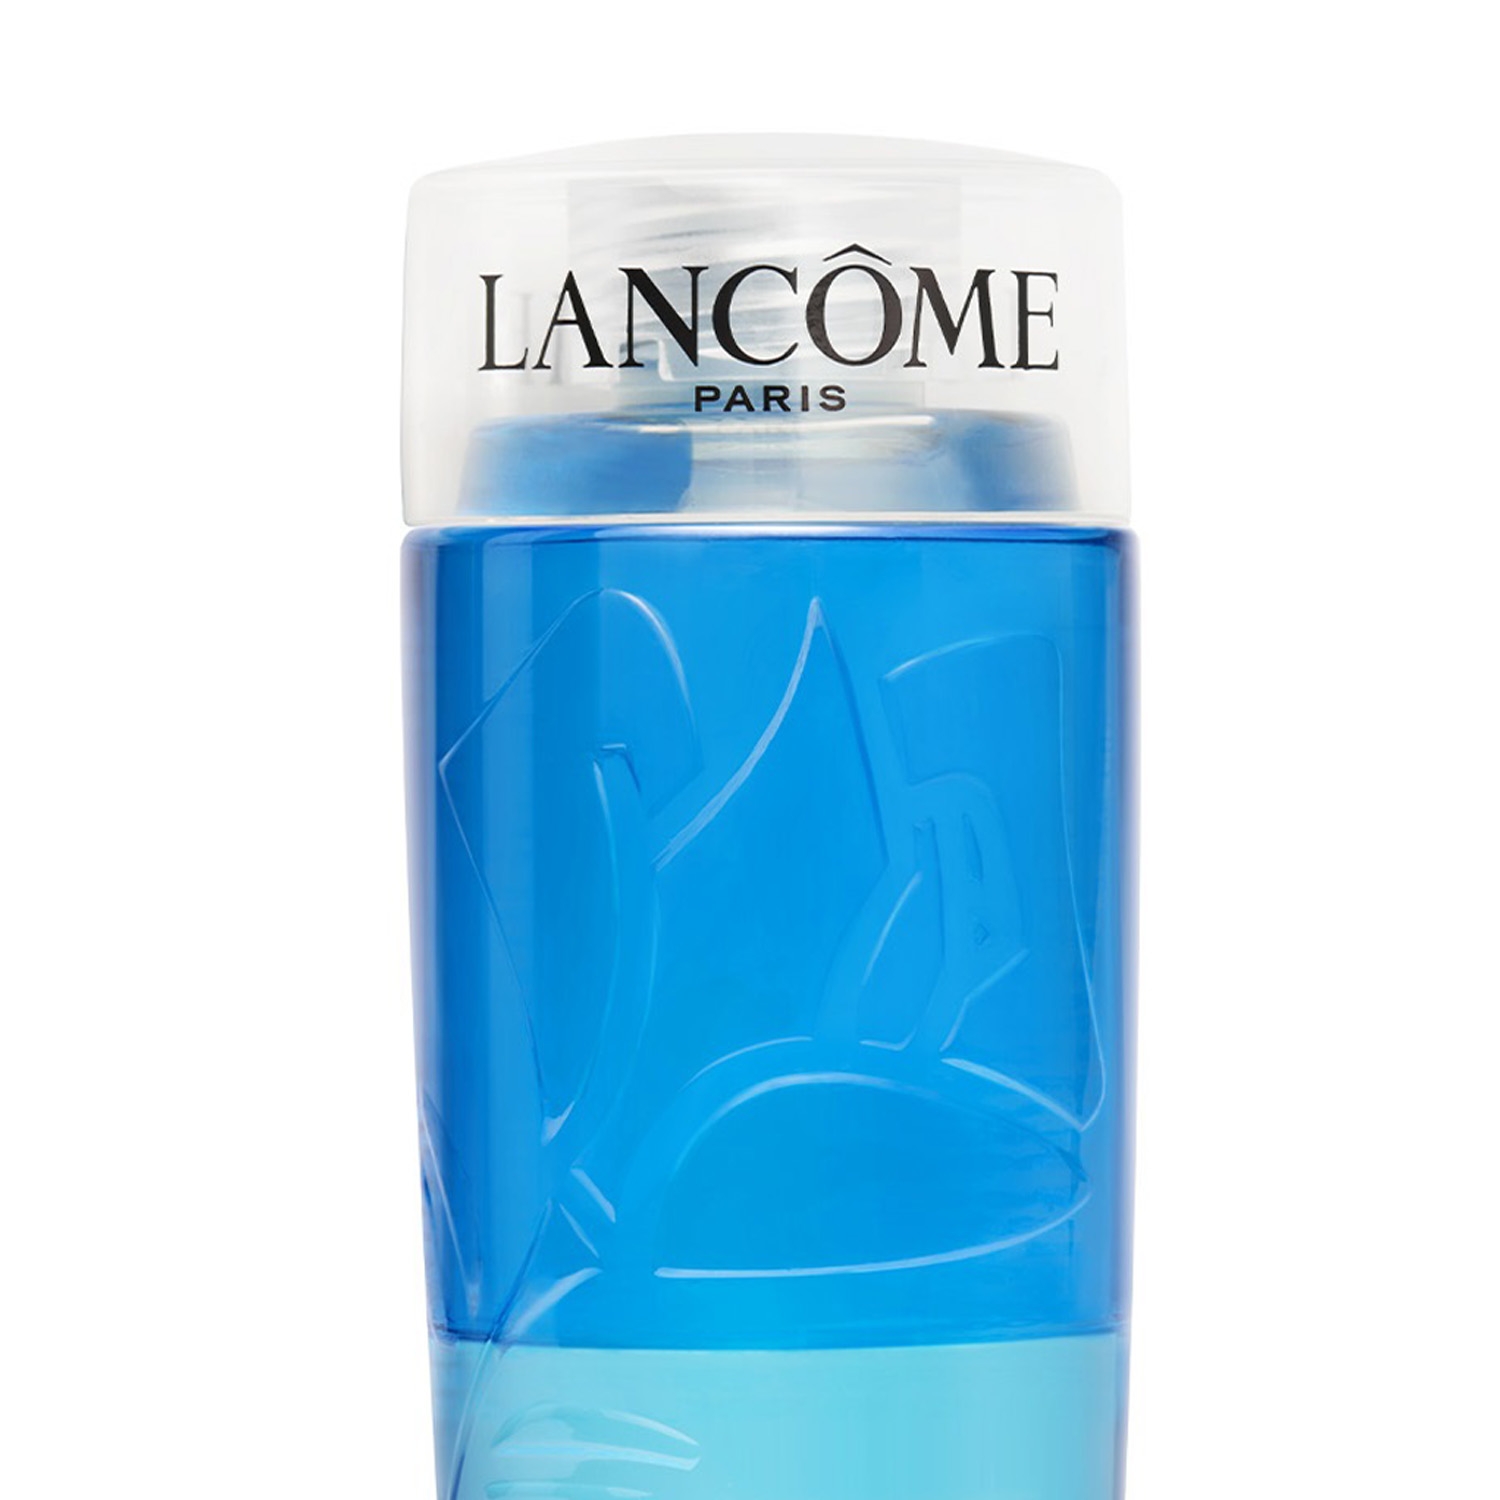 Lancome | Lancome Bi-Facial Eye Makeup Remover - Clear (125ml)